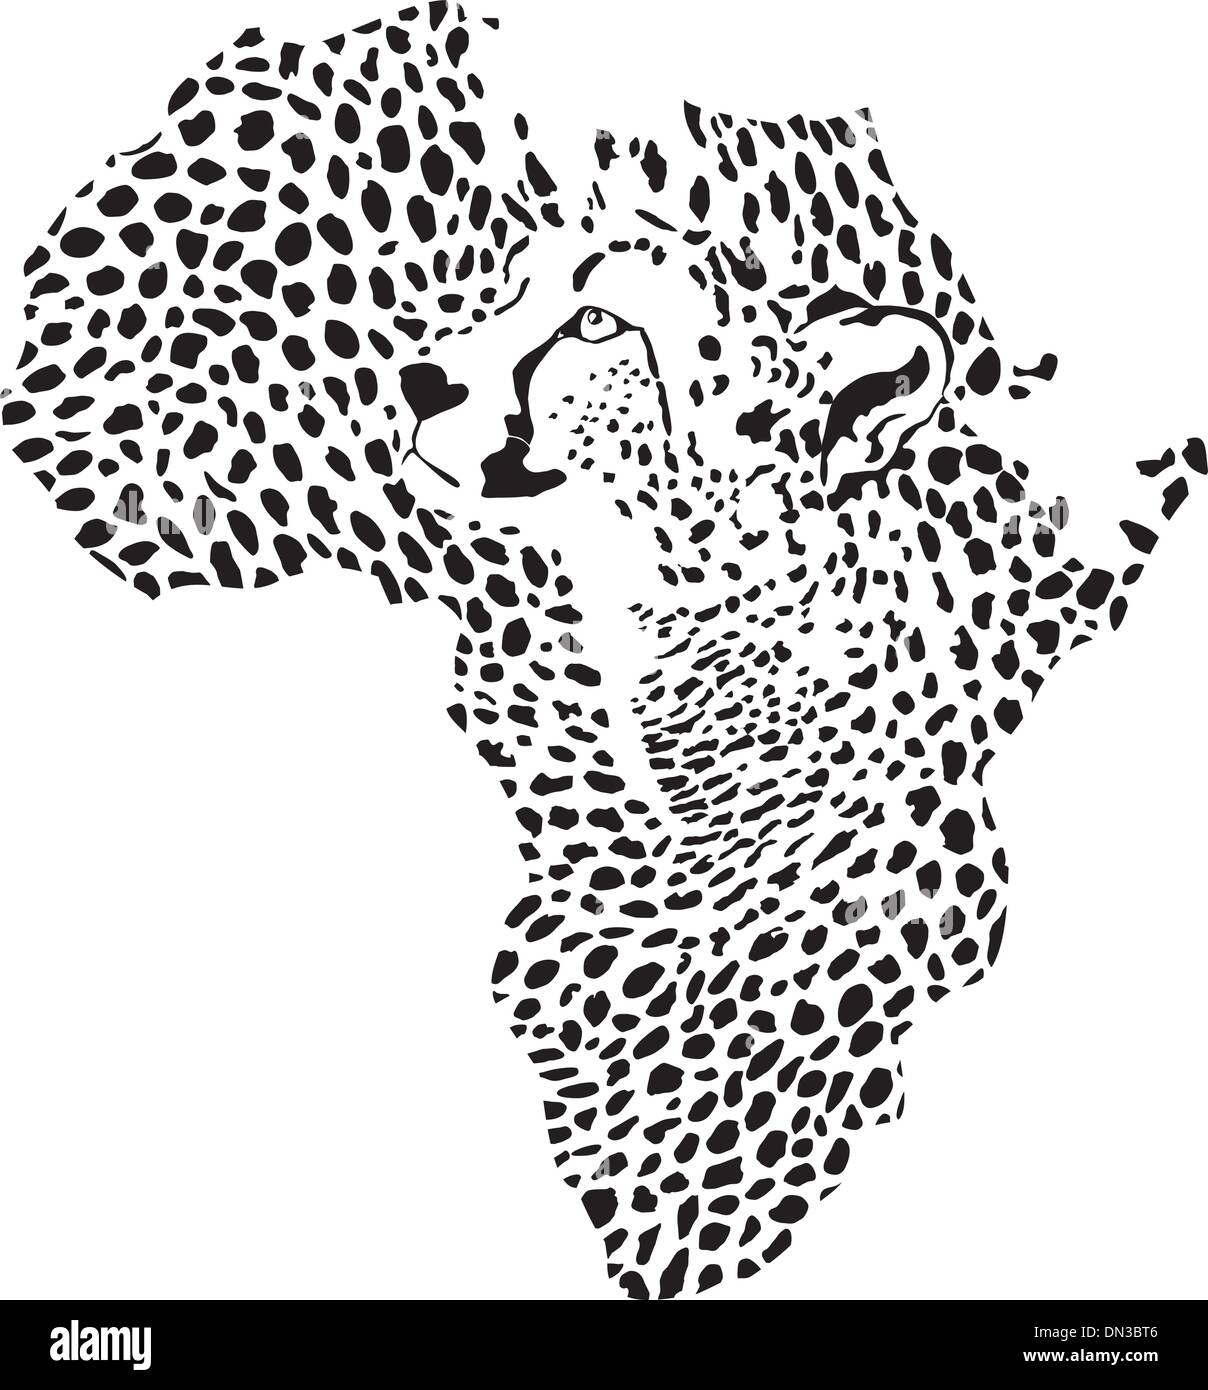 Afrika in einem Gepard-Tarnung Stock Vektor